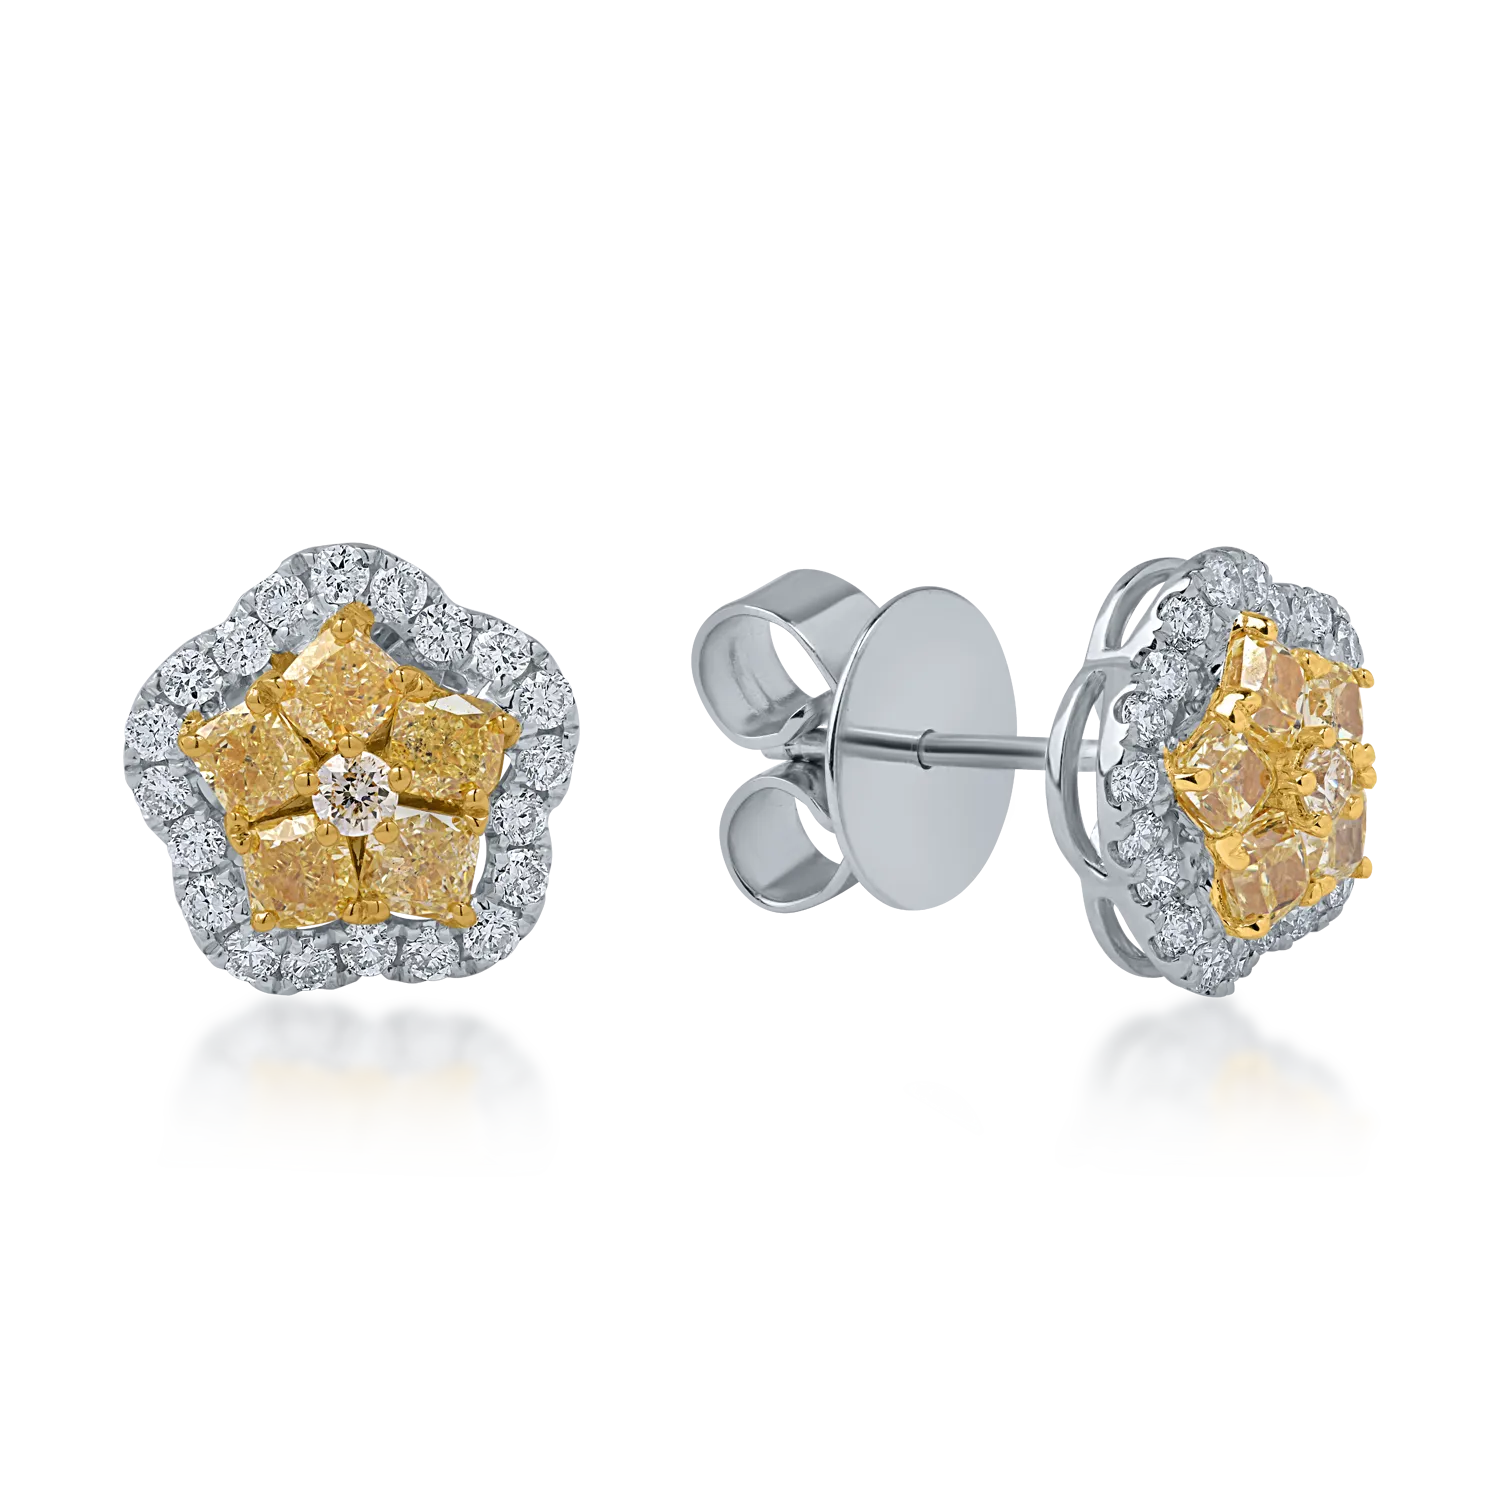 Kolczyki kwiatowe z biało-żółtego złota z żółtymi diamentami o masie 1.24ct i przezroczystymi diamentami o masie 0.44ct